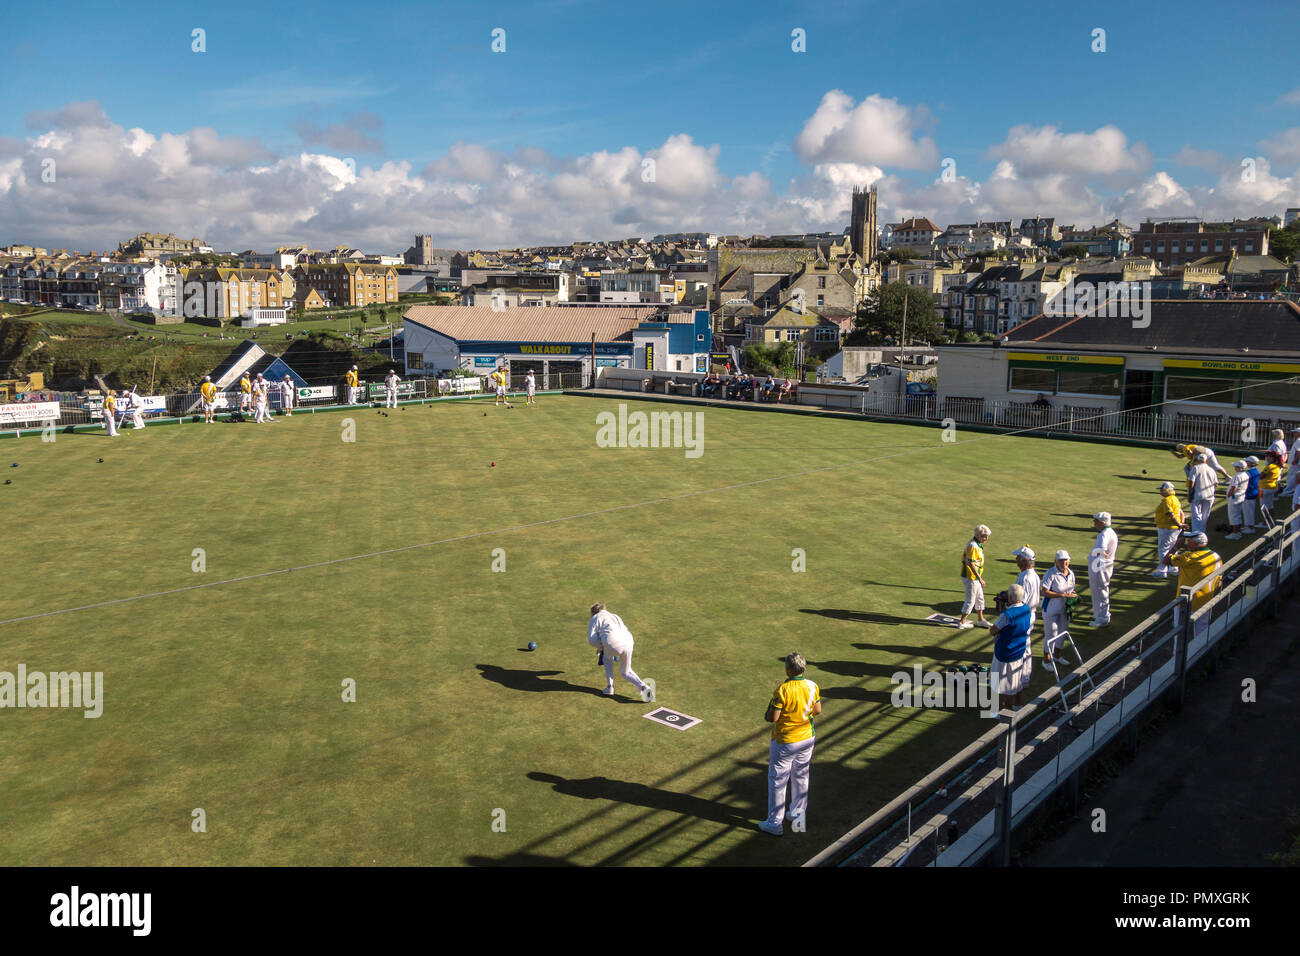 Newquay, Cornwall, Regno Unito. Un team di bocce giocando una partita sul campo da bocce, che si affaccia sulla città e sul mare Foto Stock